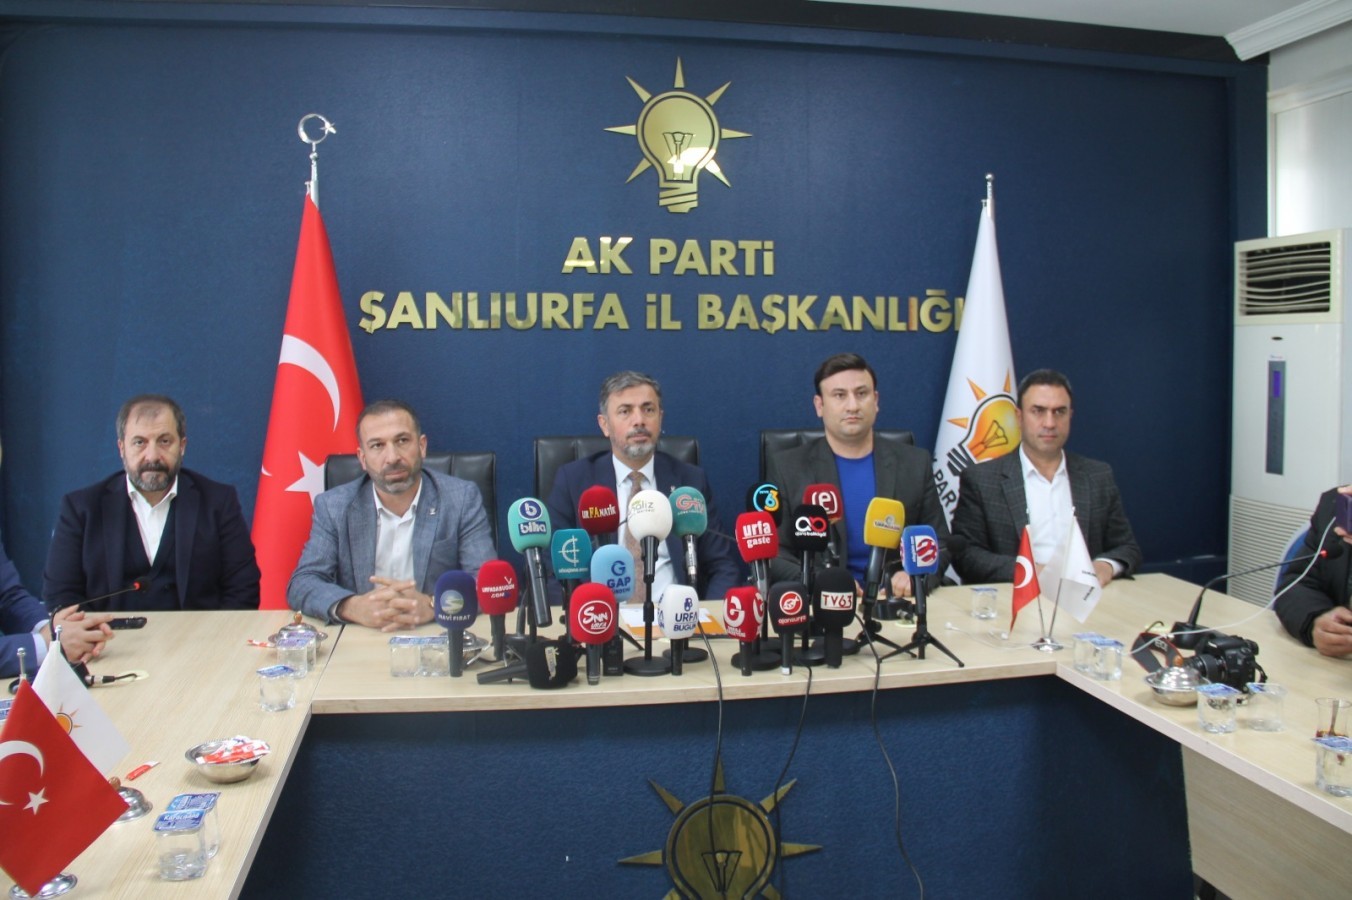 Şanlıurfa Akparti'de Milletvekili Aday Adaylığı Başvuru Sayısı Açıklandı